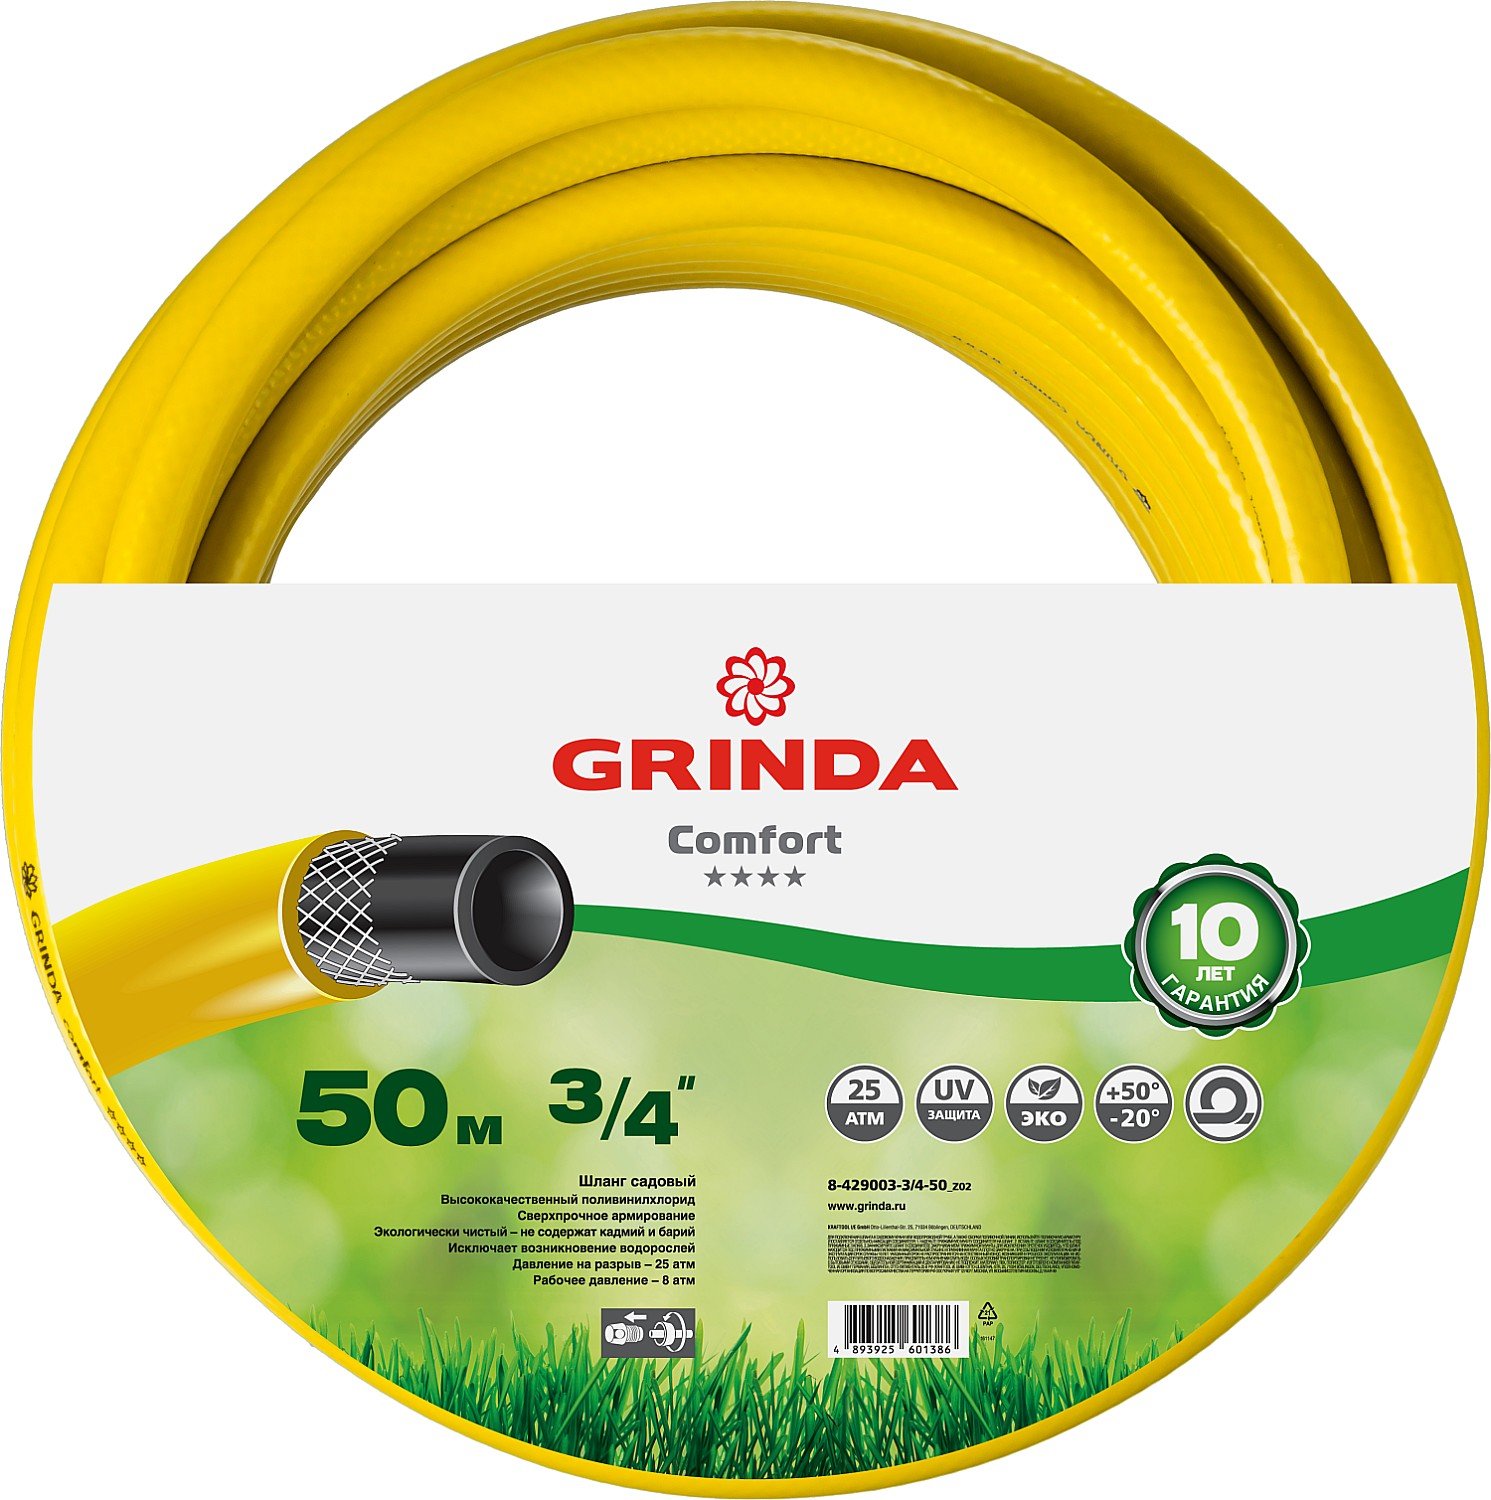   GRINDA Comfort 3 4 , 50 , 25 , ,  (8-429003-3 4-50_z02)